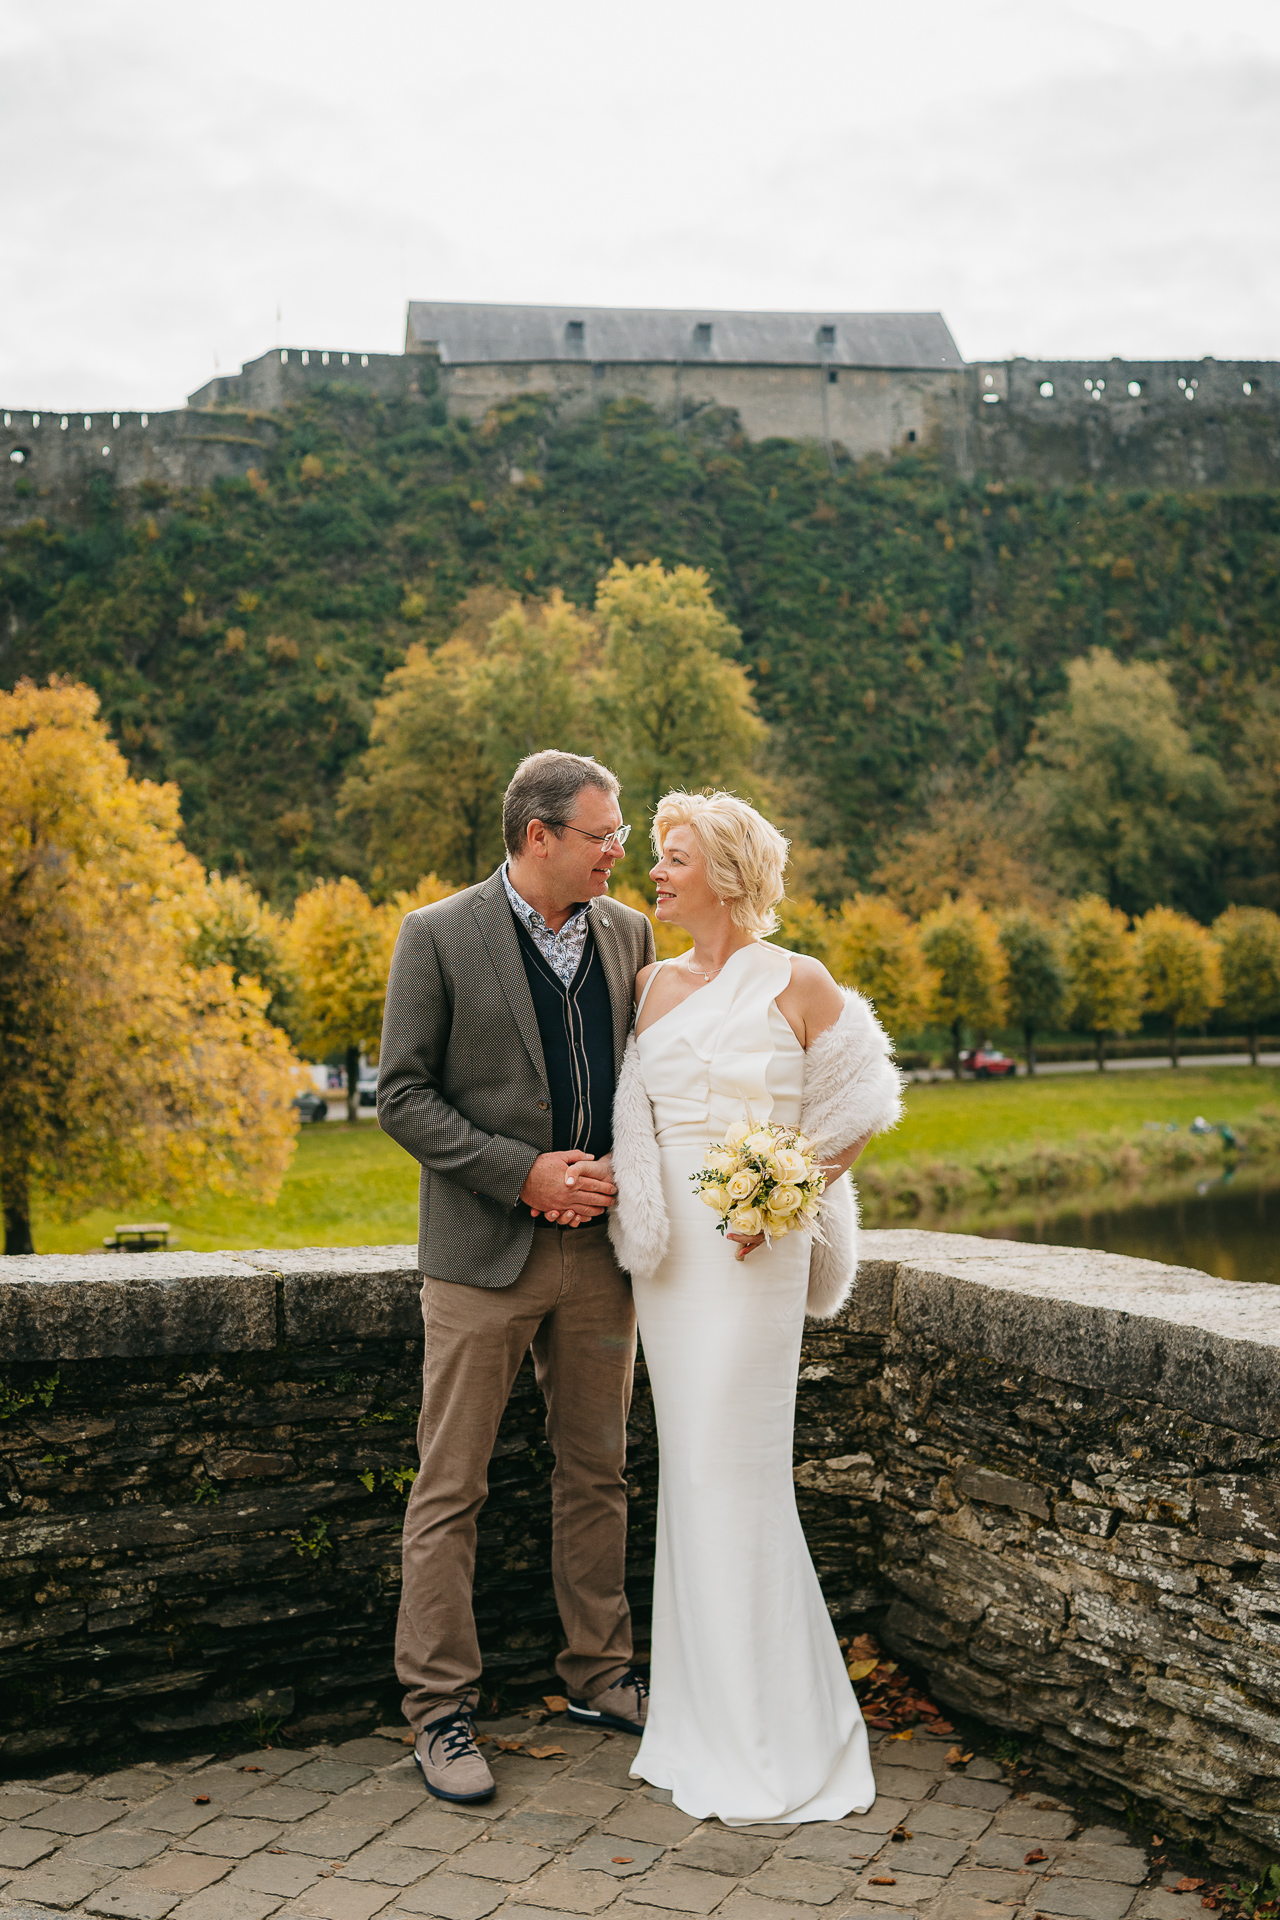 Un couple en tenue de mariage partageant un moment affectueux avec une forteresse historique et un feuillage d'automne en arrière-plan.